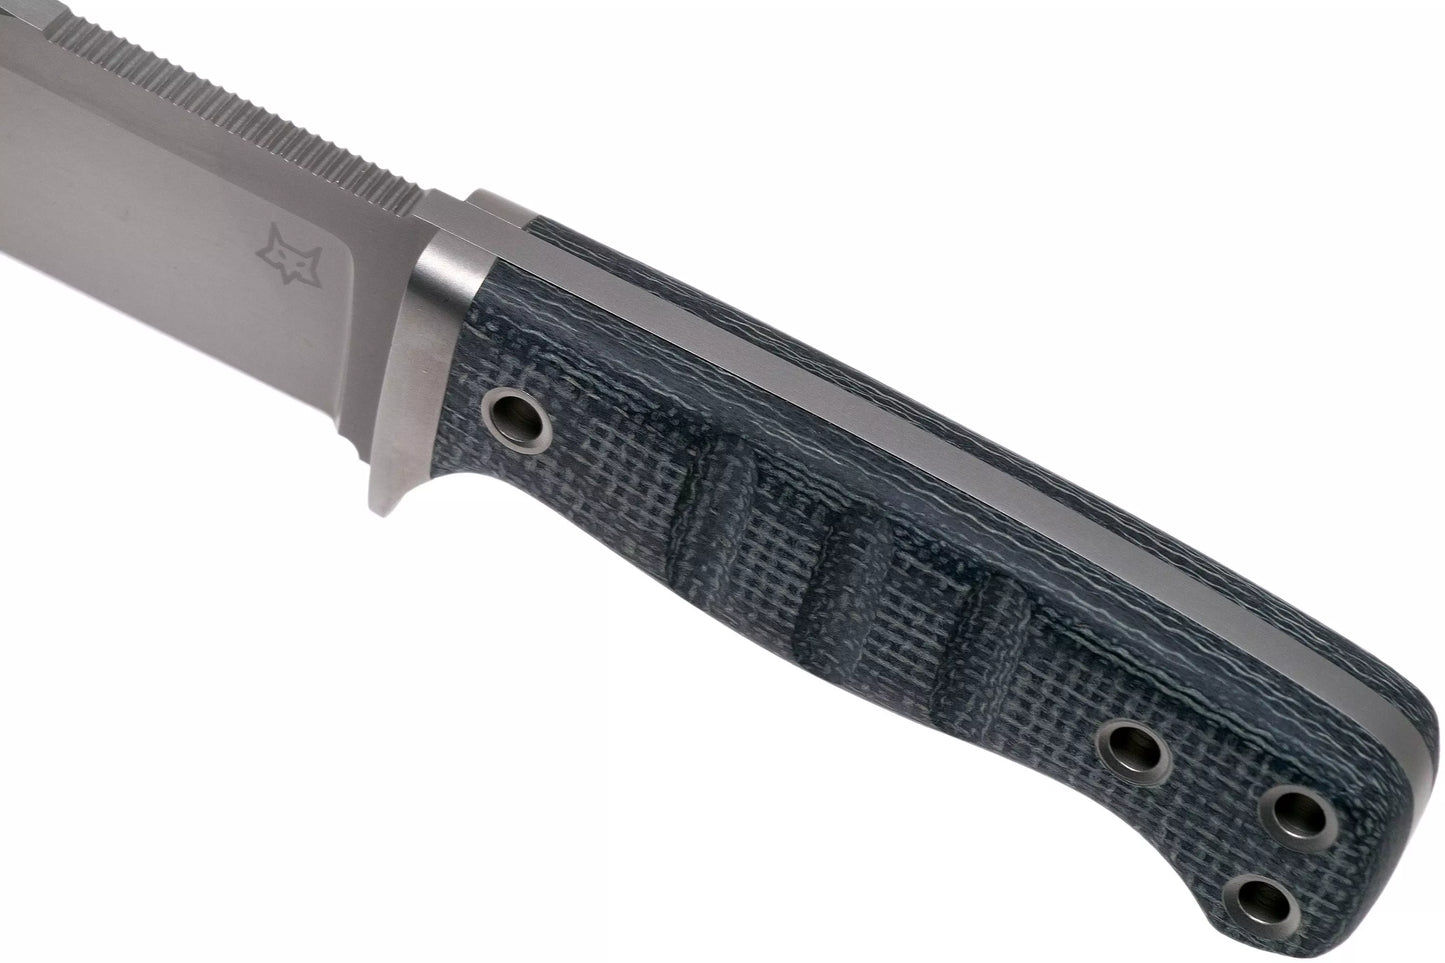 Fox coltello FX-103 MB lama fissa Design di Reichart Markus